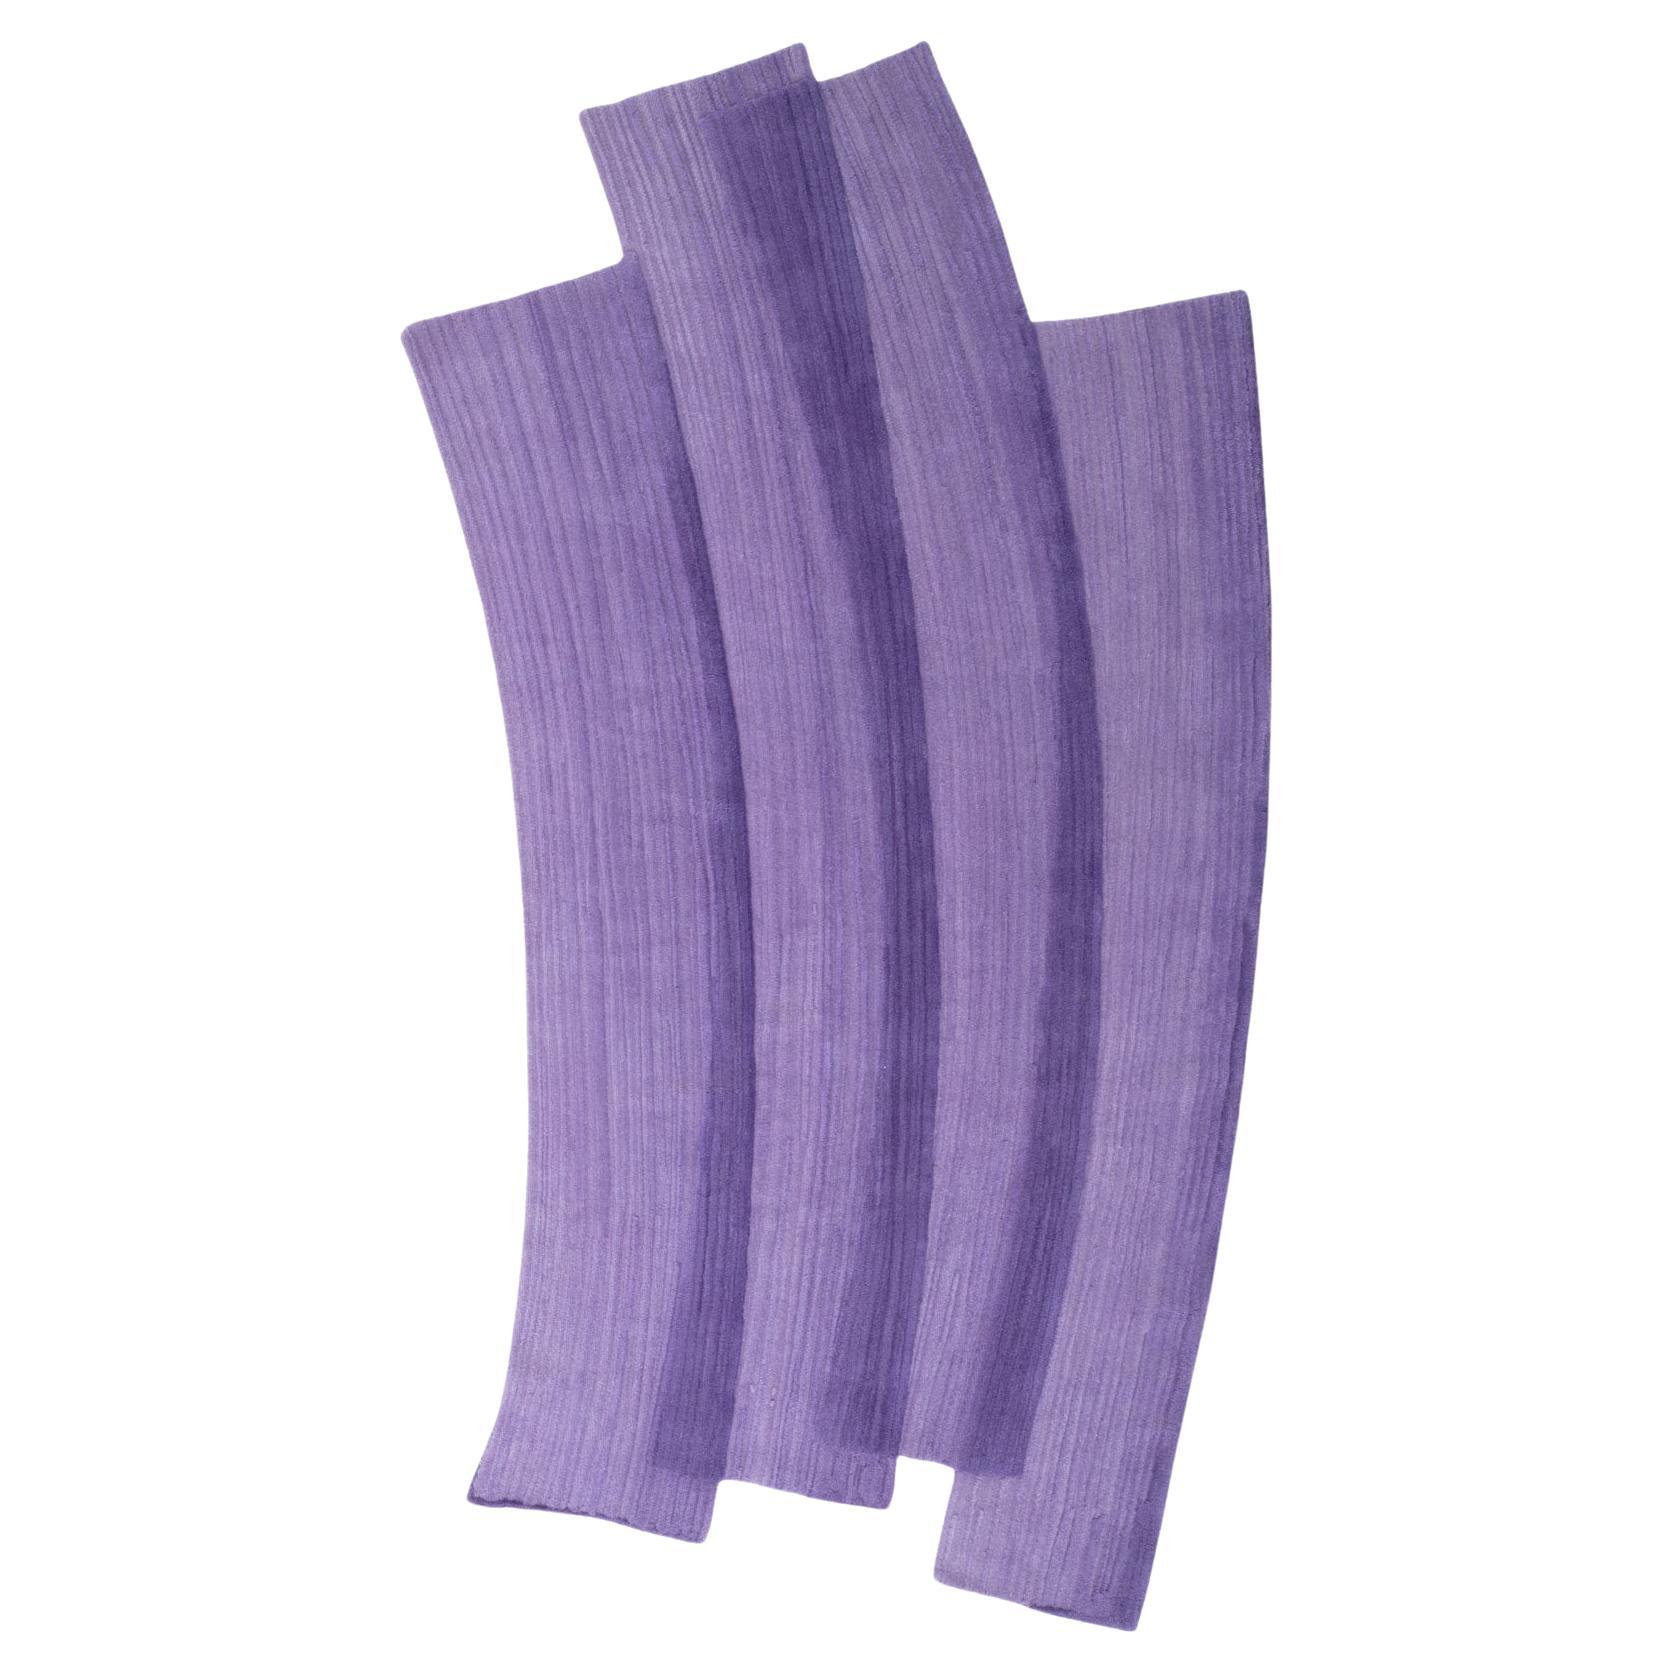 cc-tapis Stroke 1.0 Handmade Violet  Rug in Wool by Sabine Marcelis  For Sale